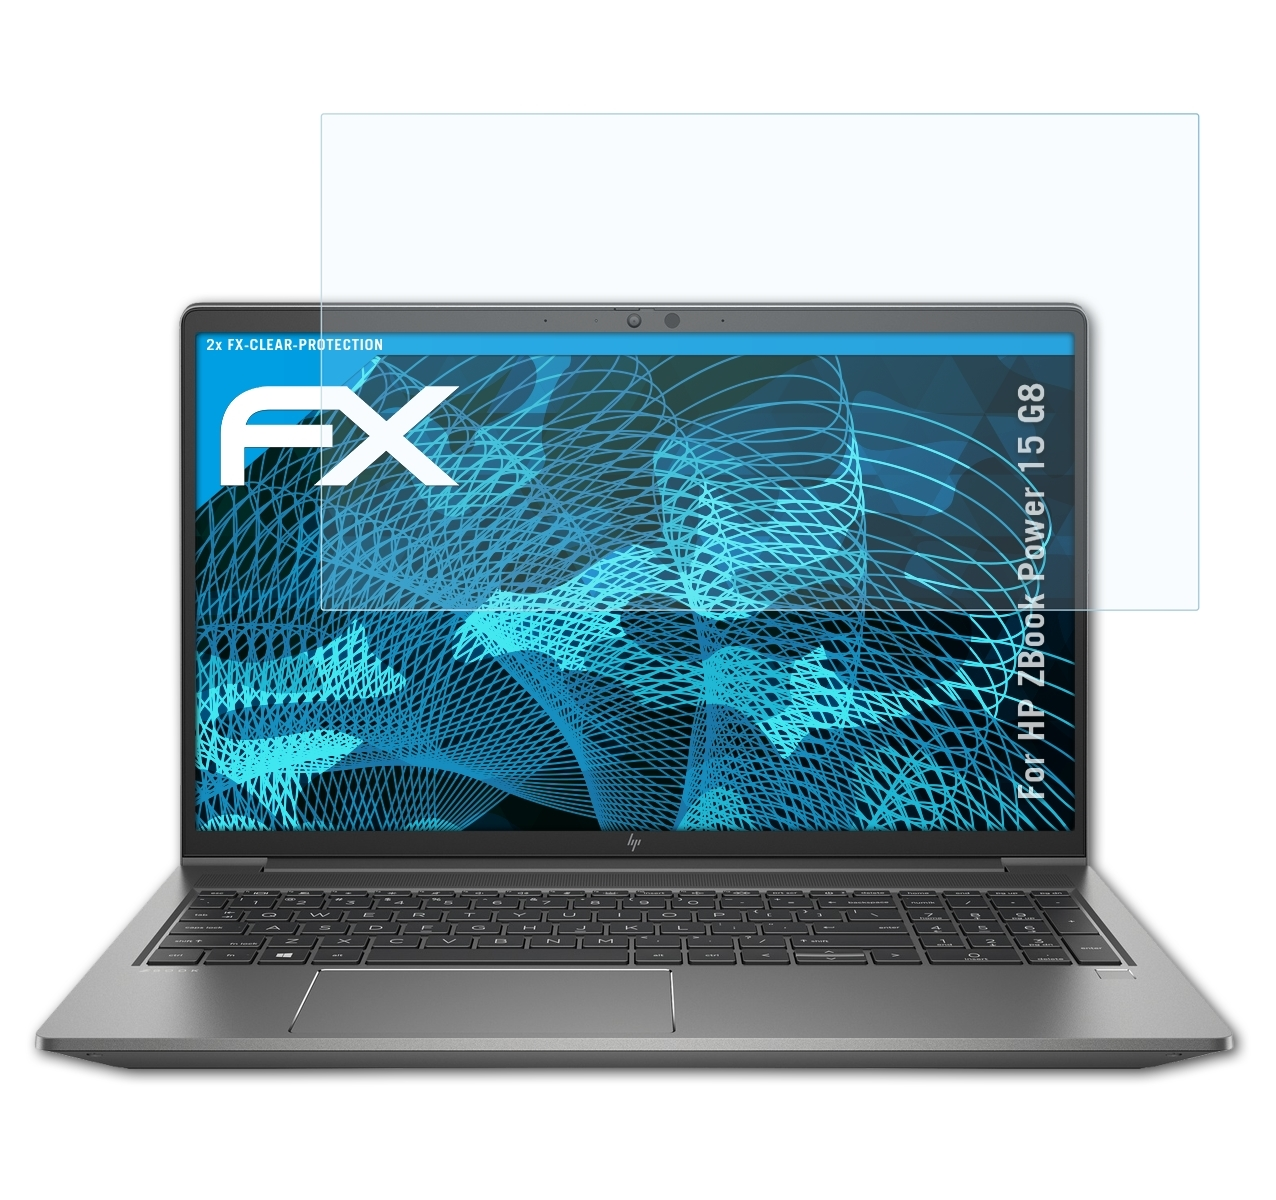 ATFOLIX 2x FX-Clear HP 15 Displayschutz(für ZBook Power G8)